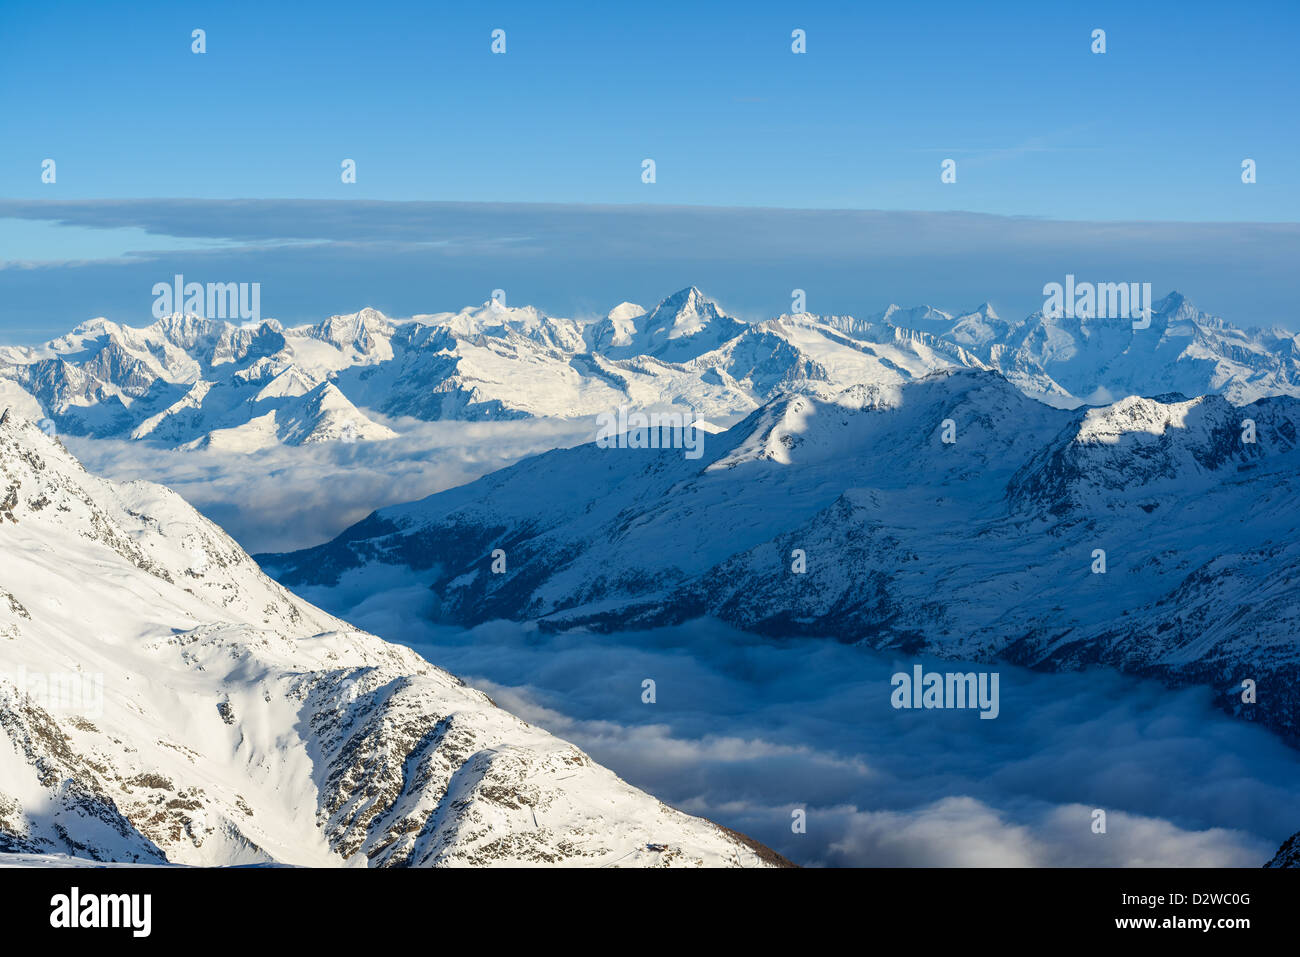 Panorama des Alpes suisses en hiver, vue d'Mitelallalin, Saas-Fee, Valais, Suisse Banque D'Images